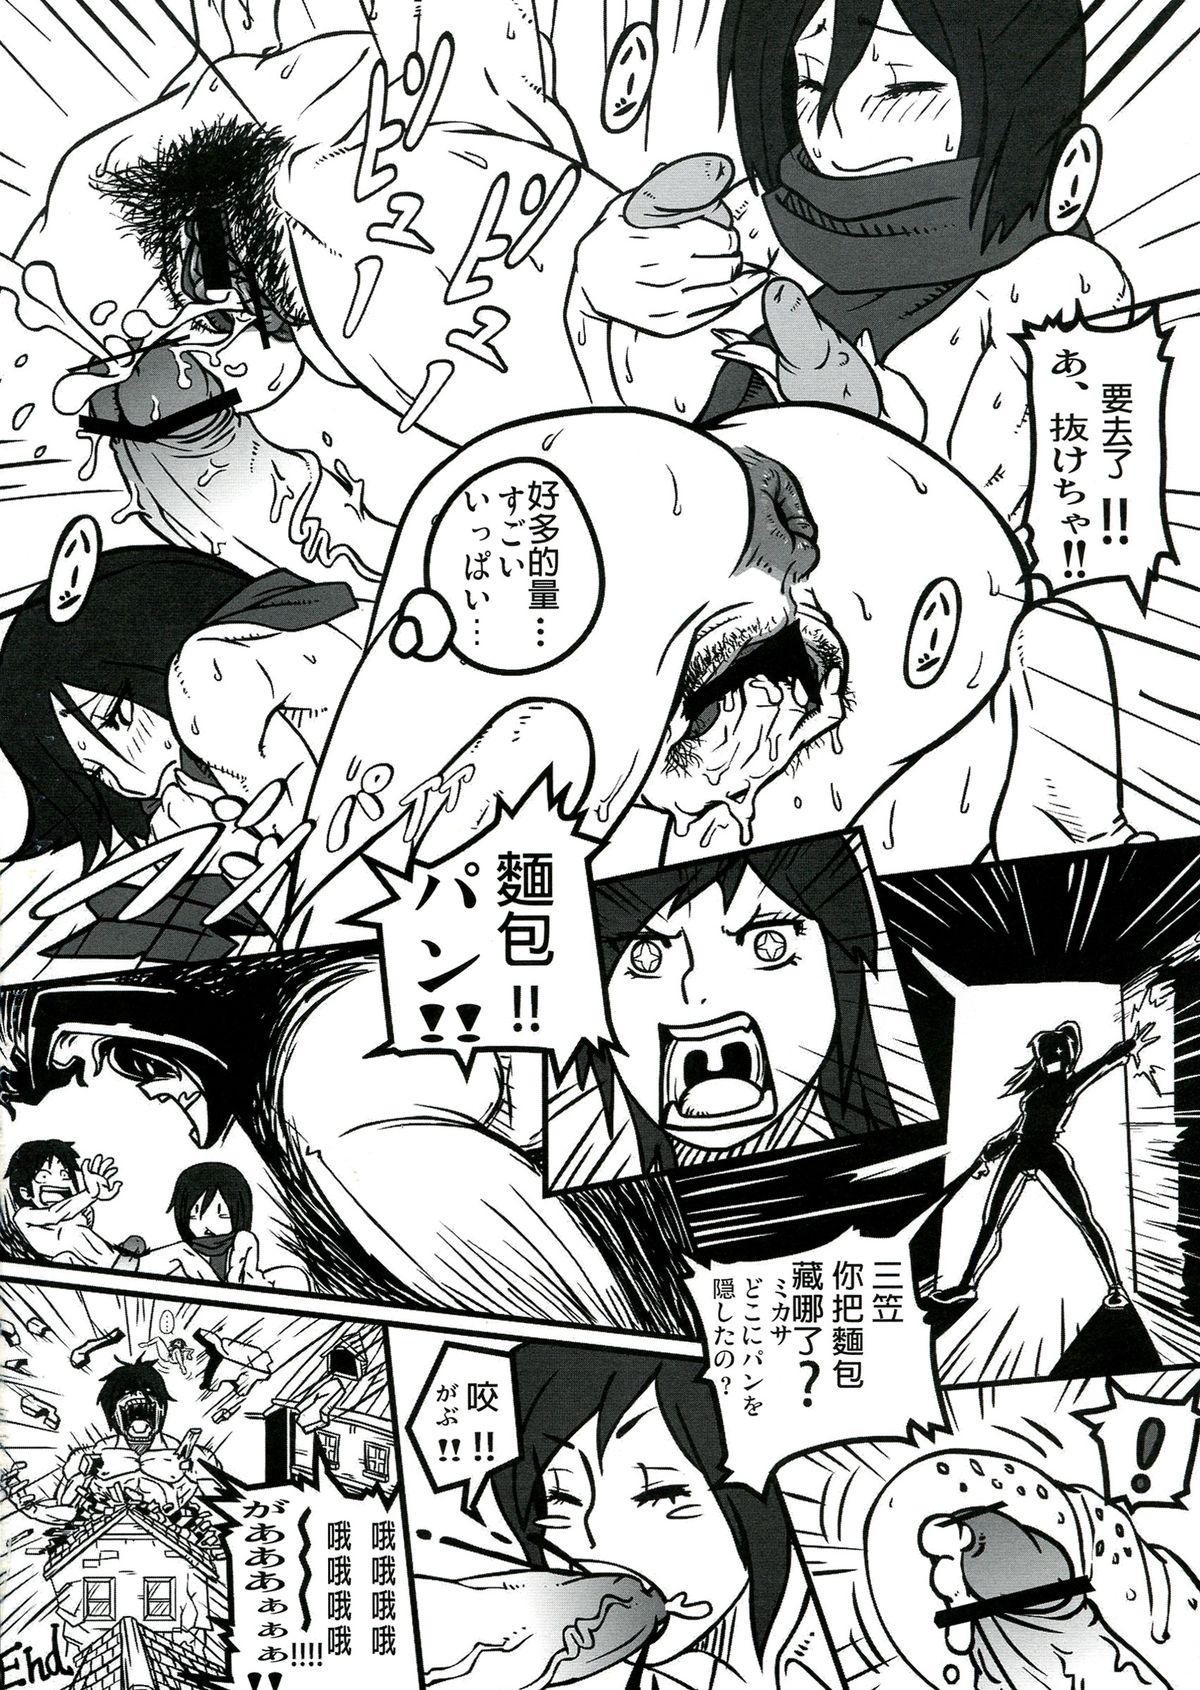 Ex Gf Shin Hanzuuryouku 27 - Neon genesis evangelion Shingeki no kyojin Urusei yatsura Space battleship yamato Sloppy Blow Job - Page 48